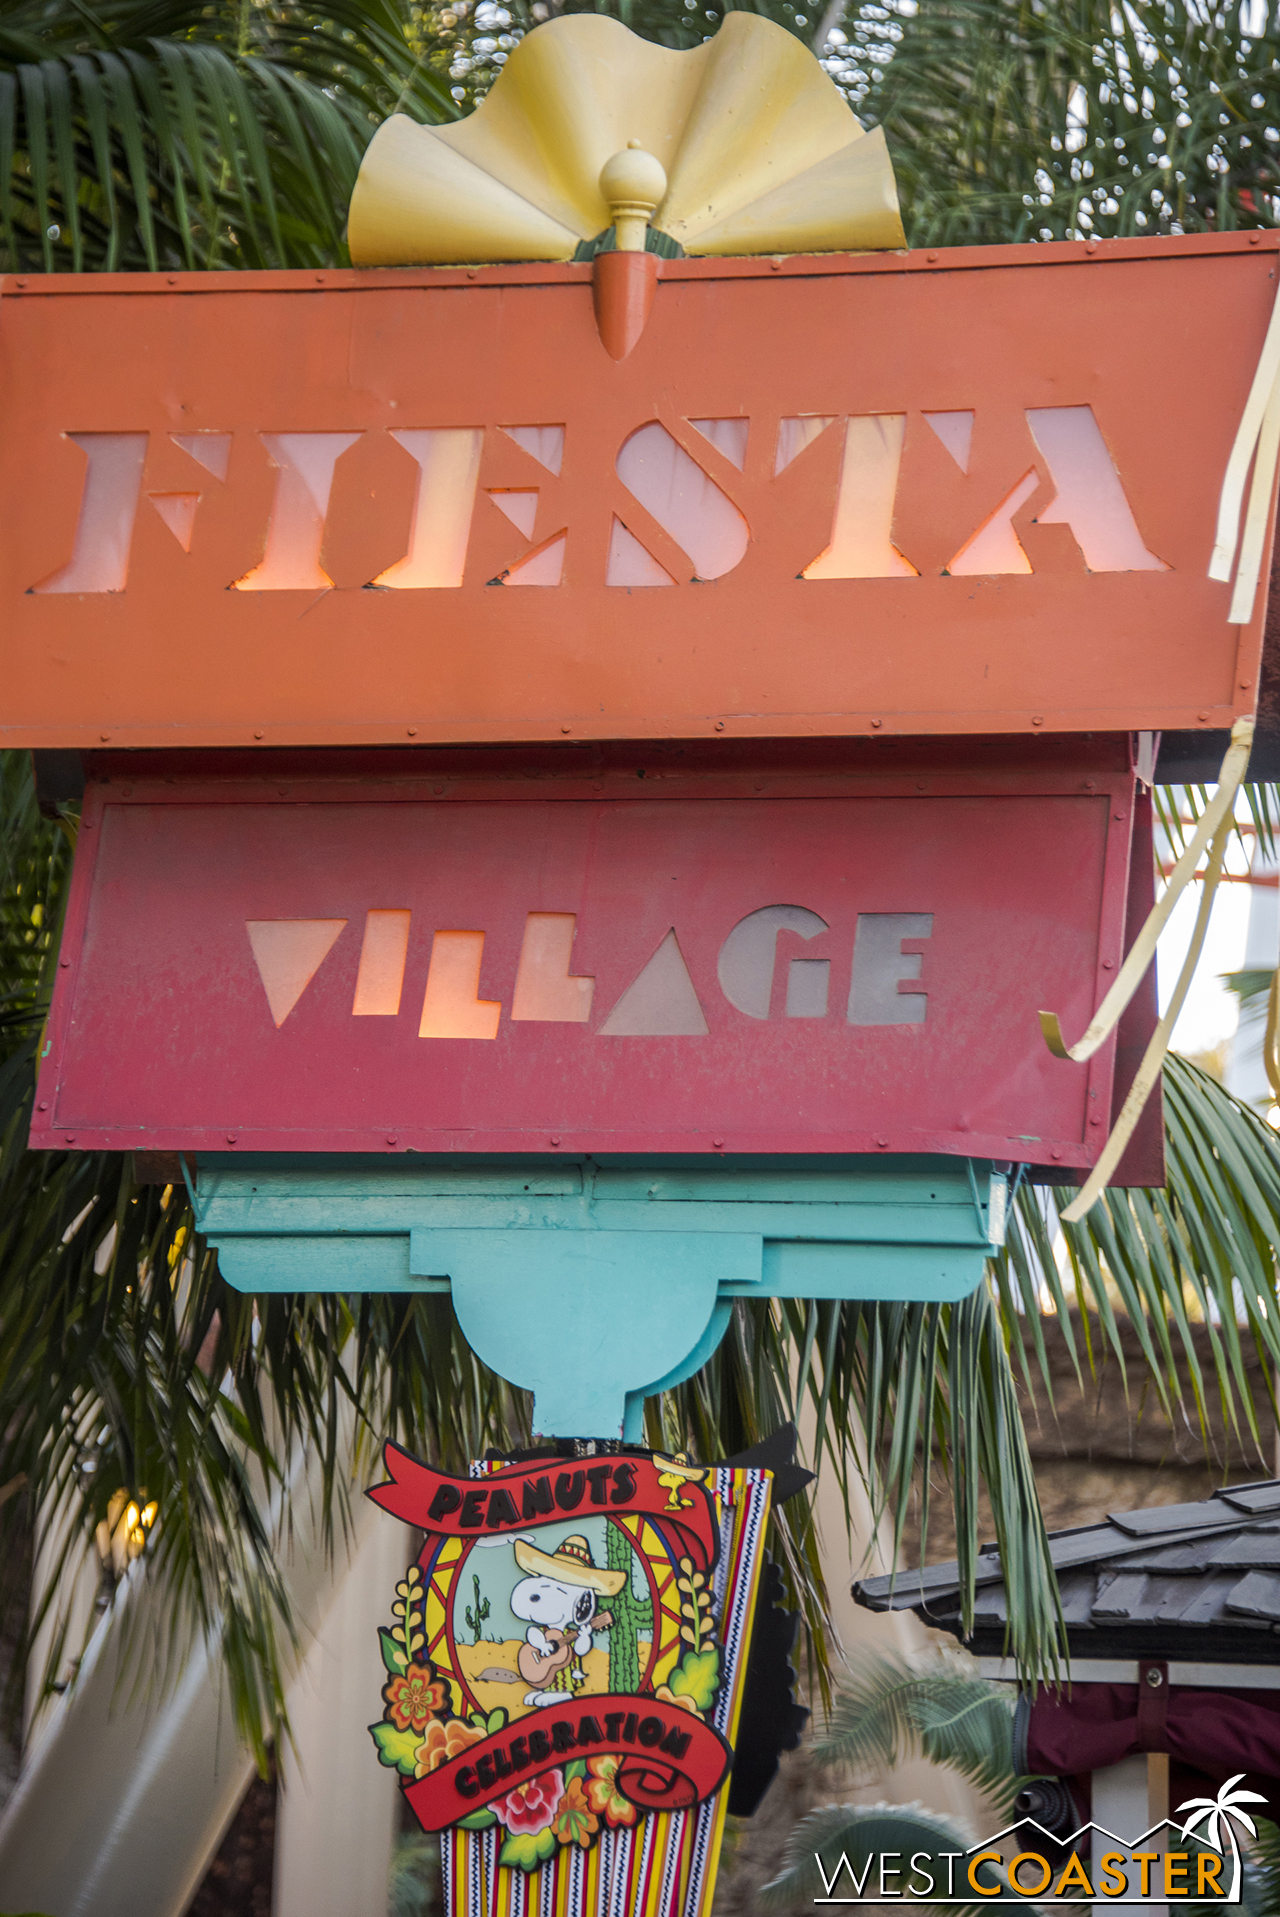  And Fiesta Village... 